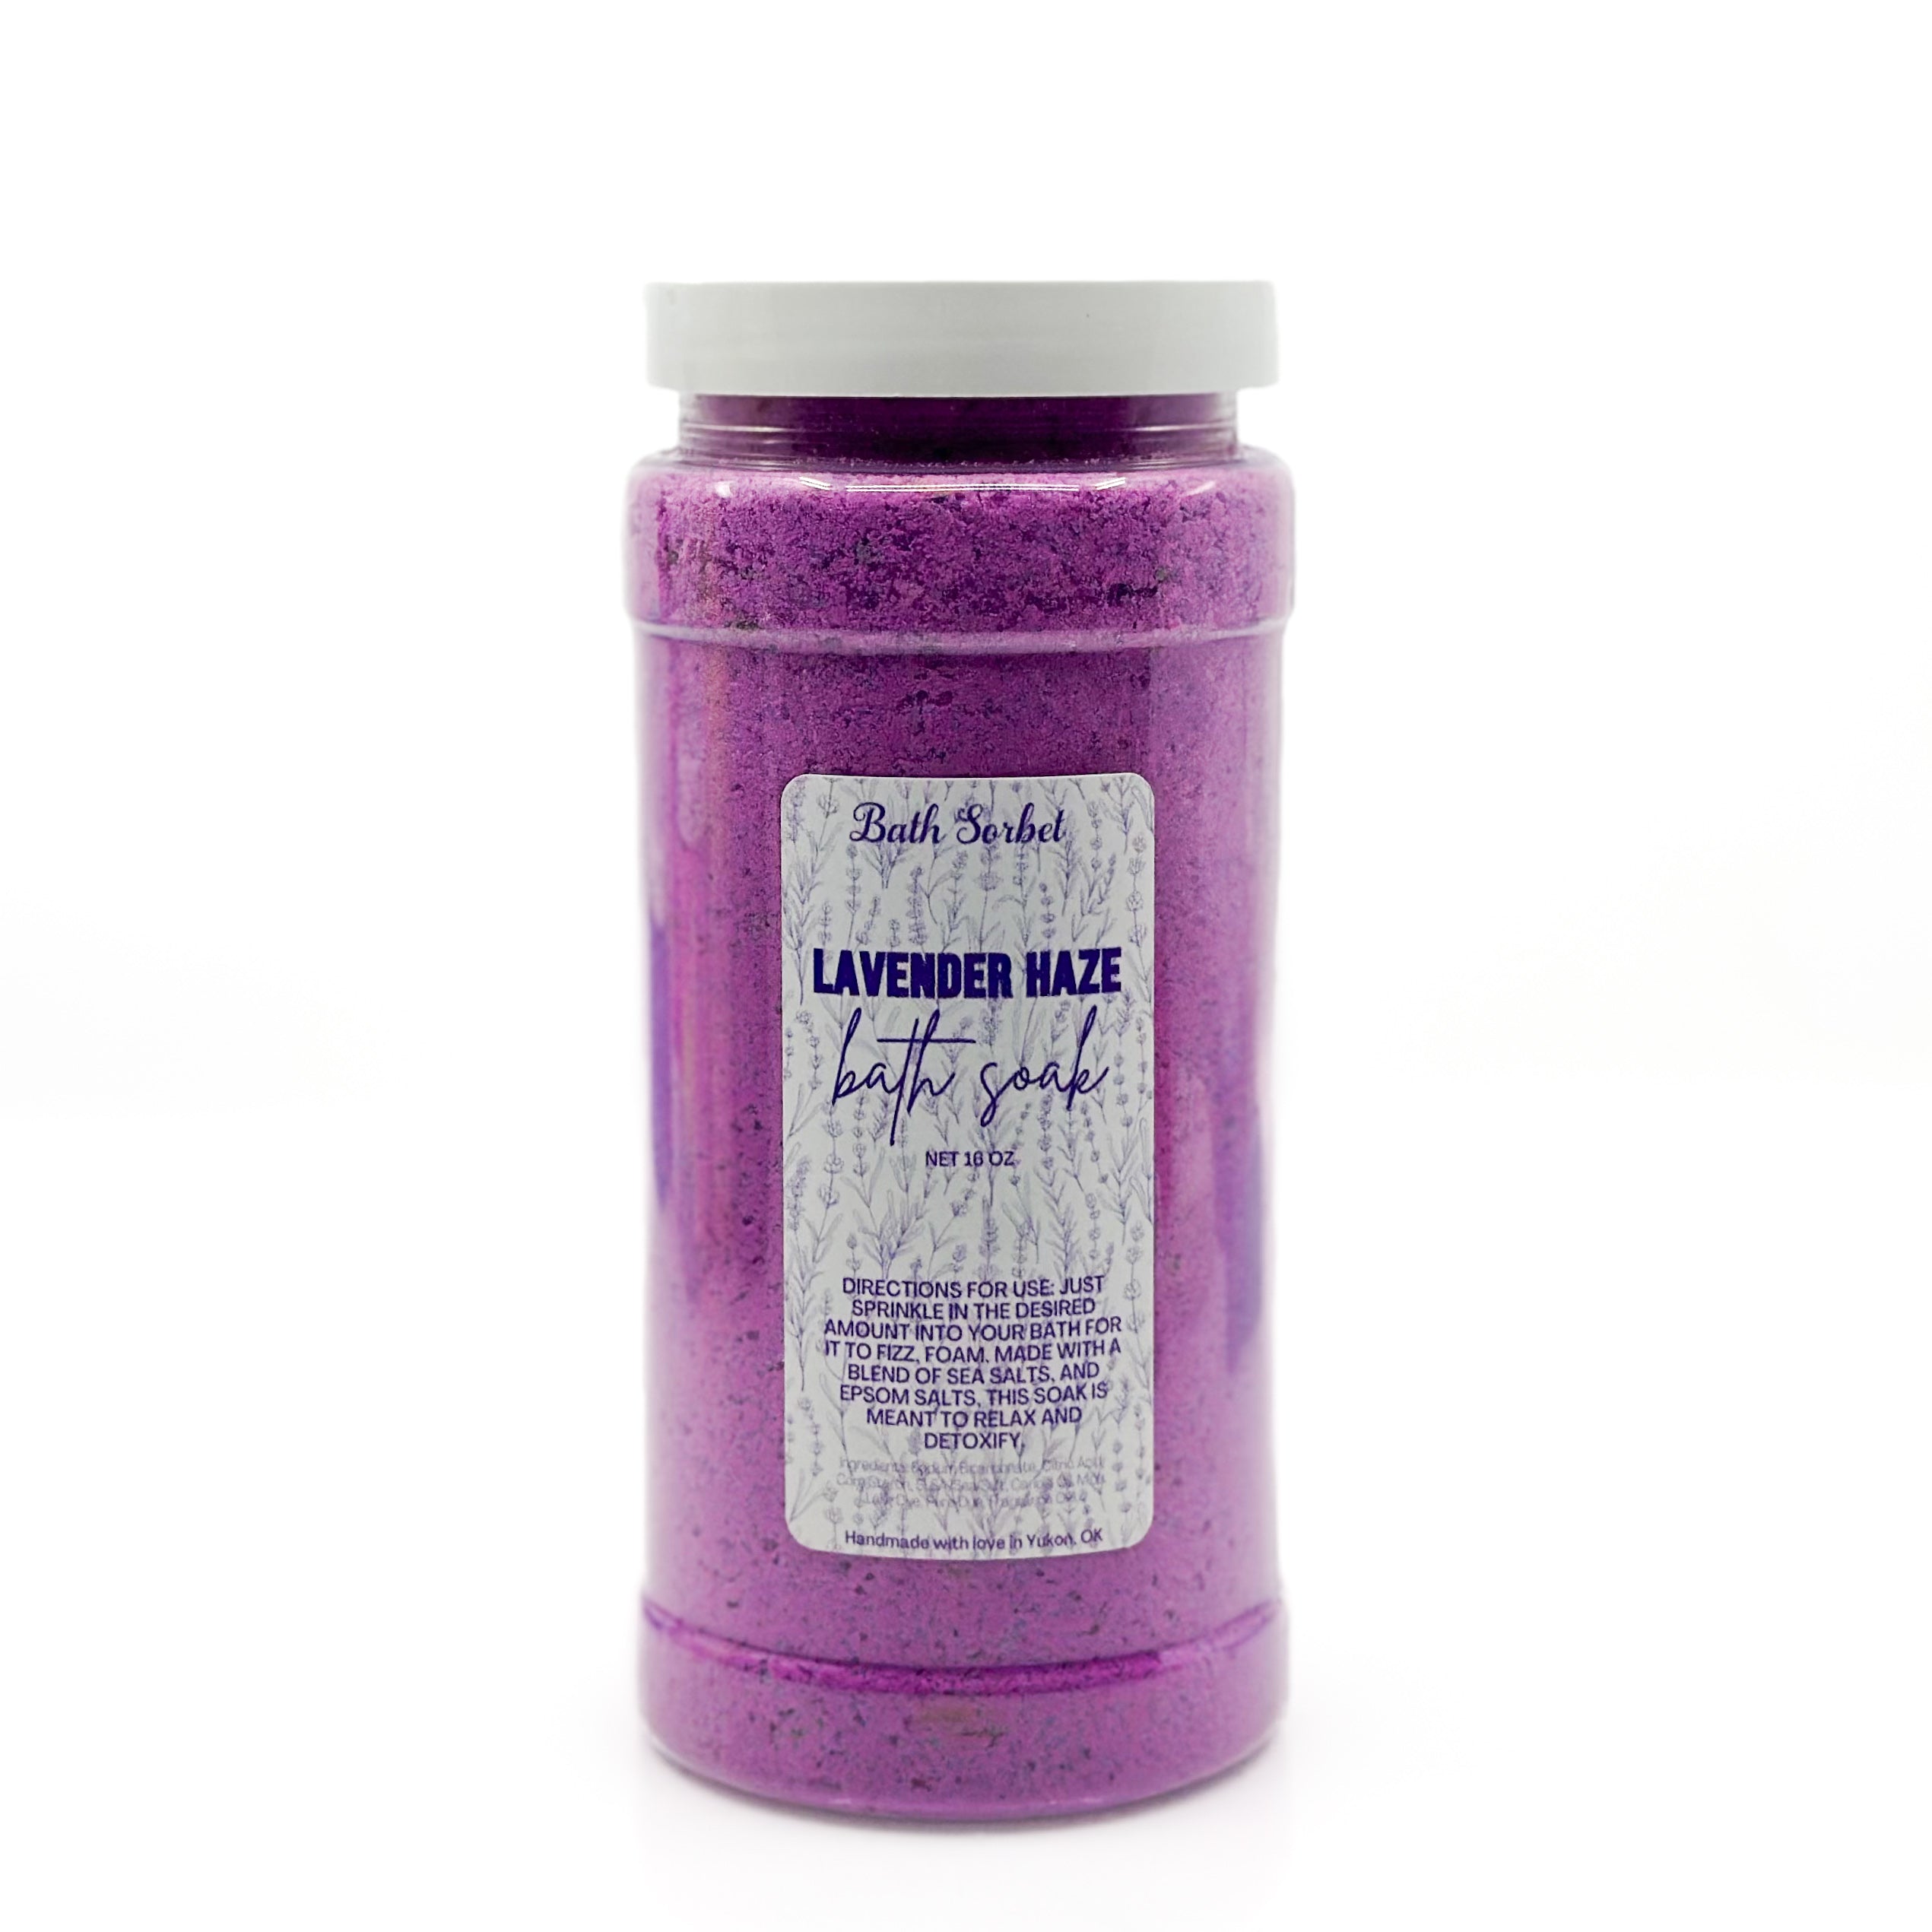 Lavender Haze Bath Soak